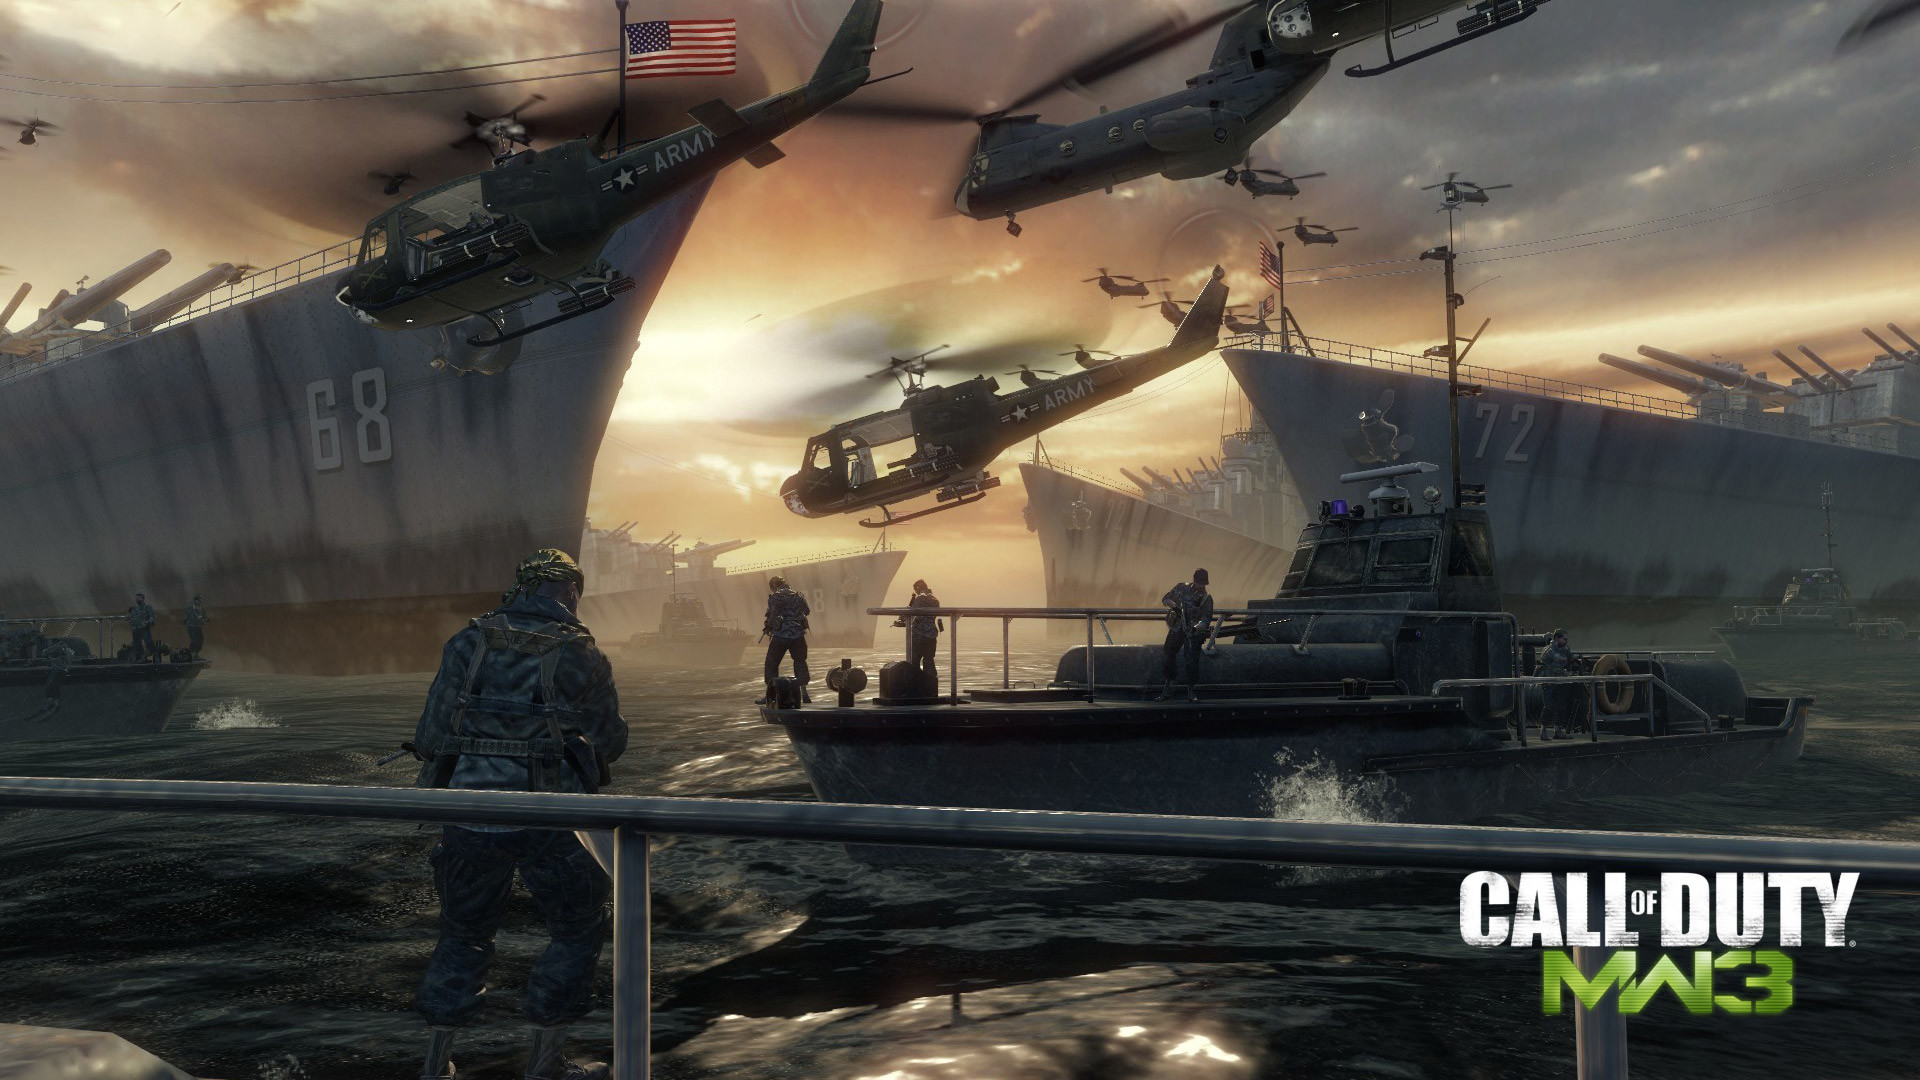 1920x1080 Free Call of Duty: Modern Warfare 3 Wallpaper in 